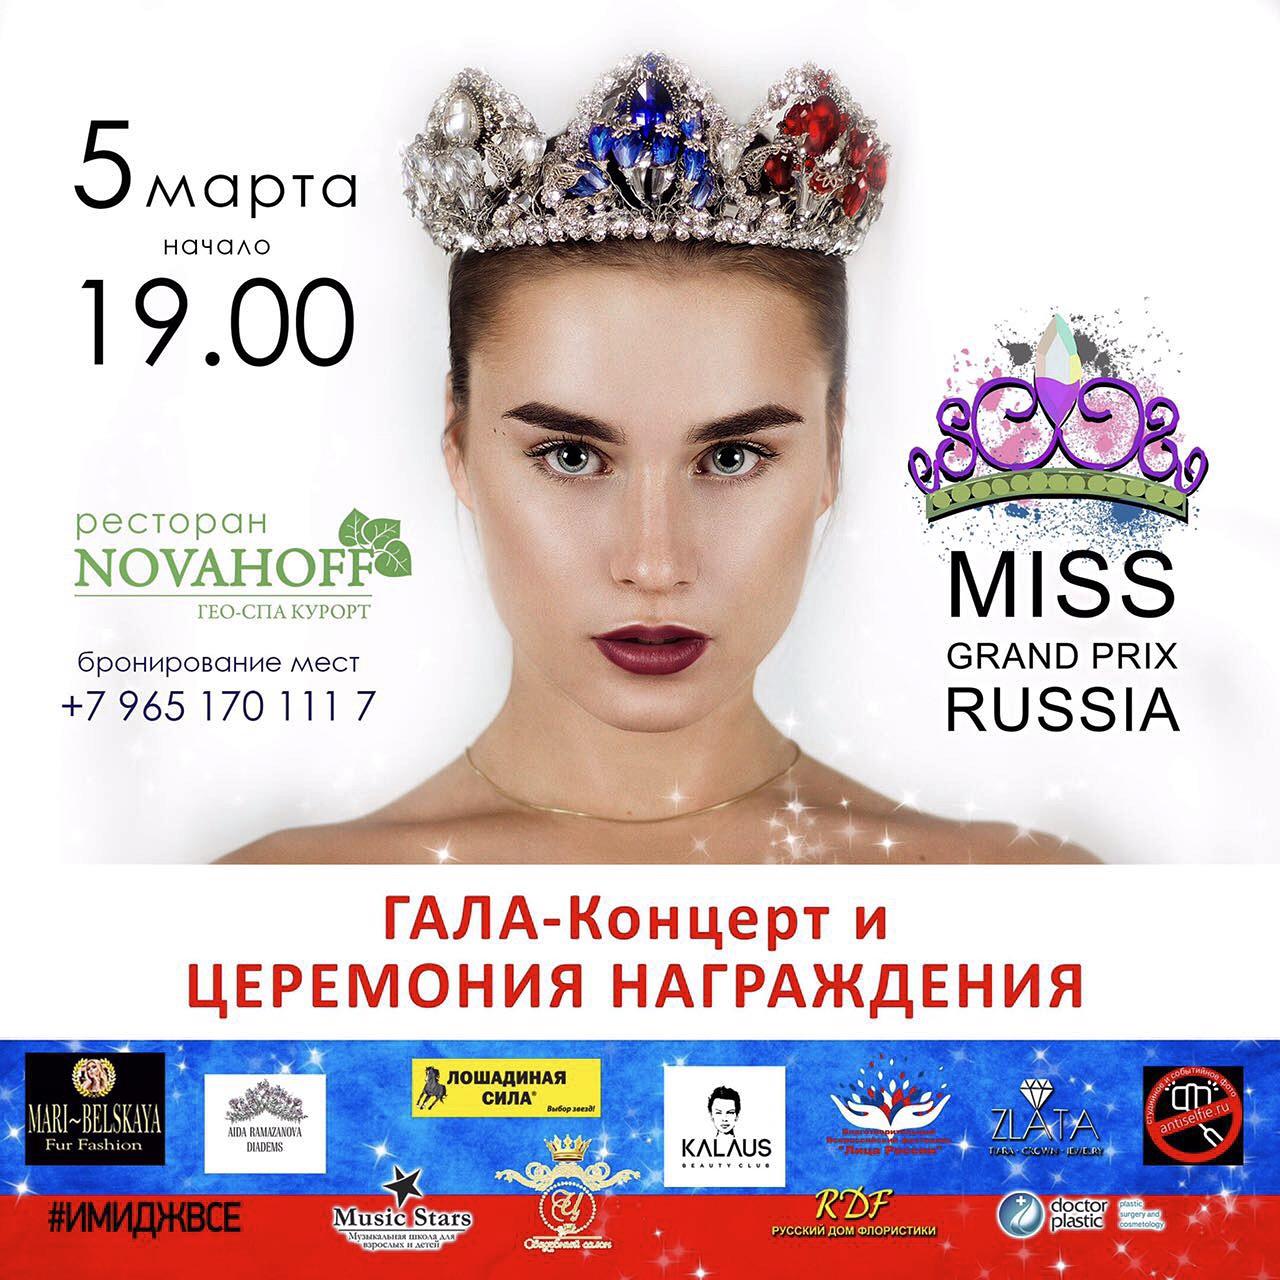 Всероссийский конкурс красоты и таланта объявляет кастинг MISS GRAND-PRIX 2017